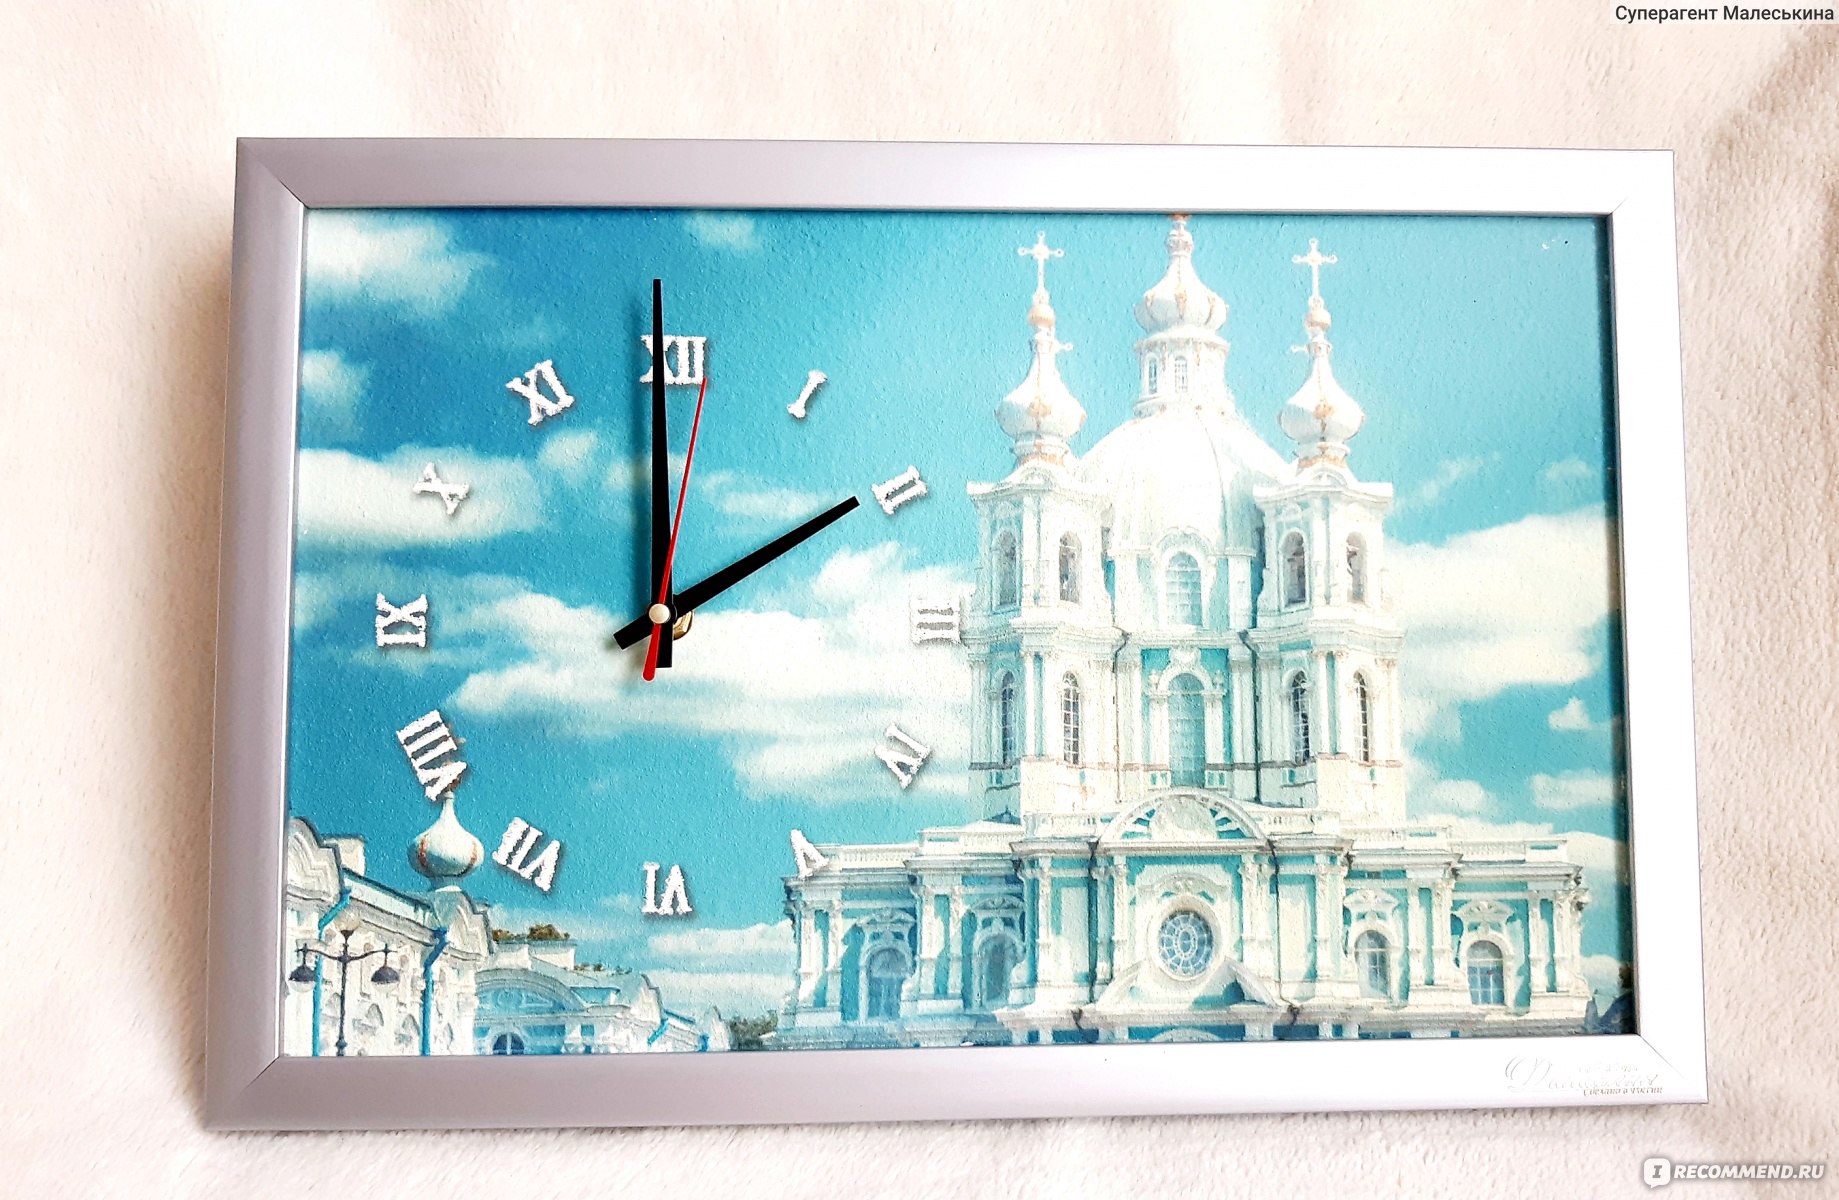 Купить часы на авито в спб. Часы картина Санкт Петербург. Часы Orsi настольные Saint-Petersburg. Тихие часы в СПБ. Картины из запчастей часов СПБ.